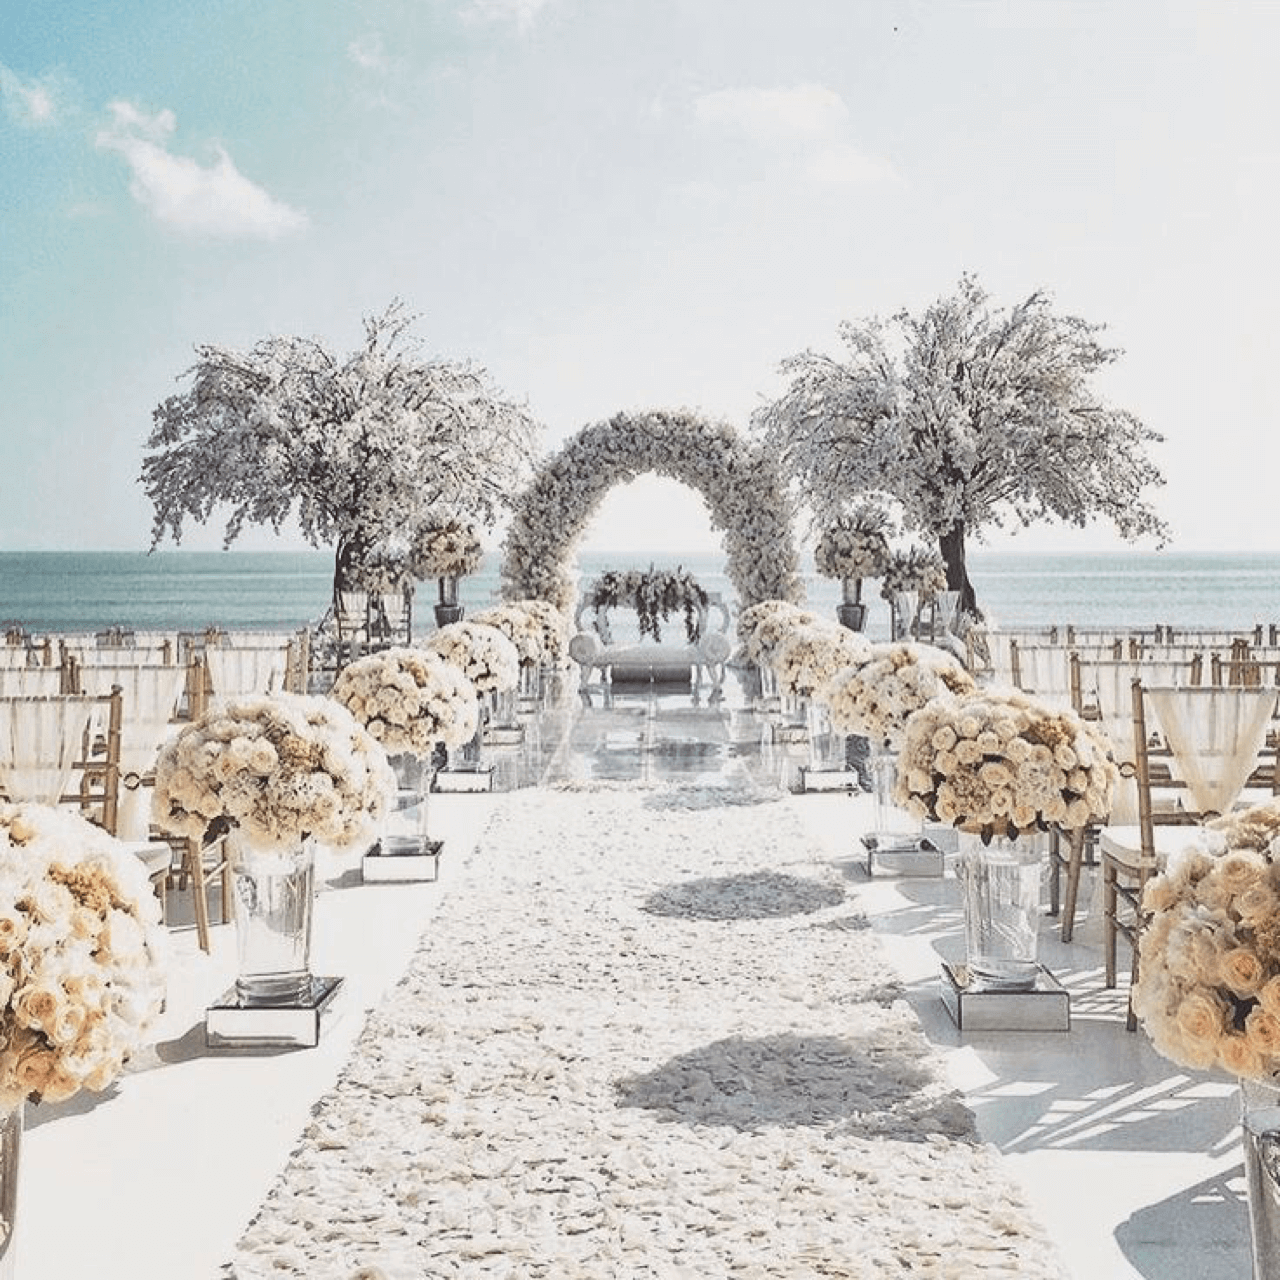 Ý tưởng trang trí đám cưới - đám cưới tuyệt vời tại bãi biển - Pinterest